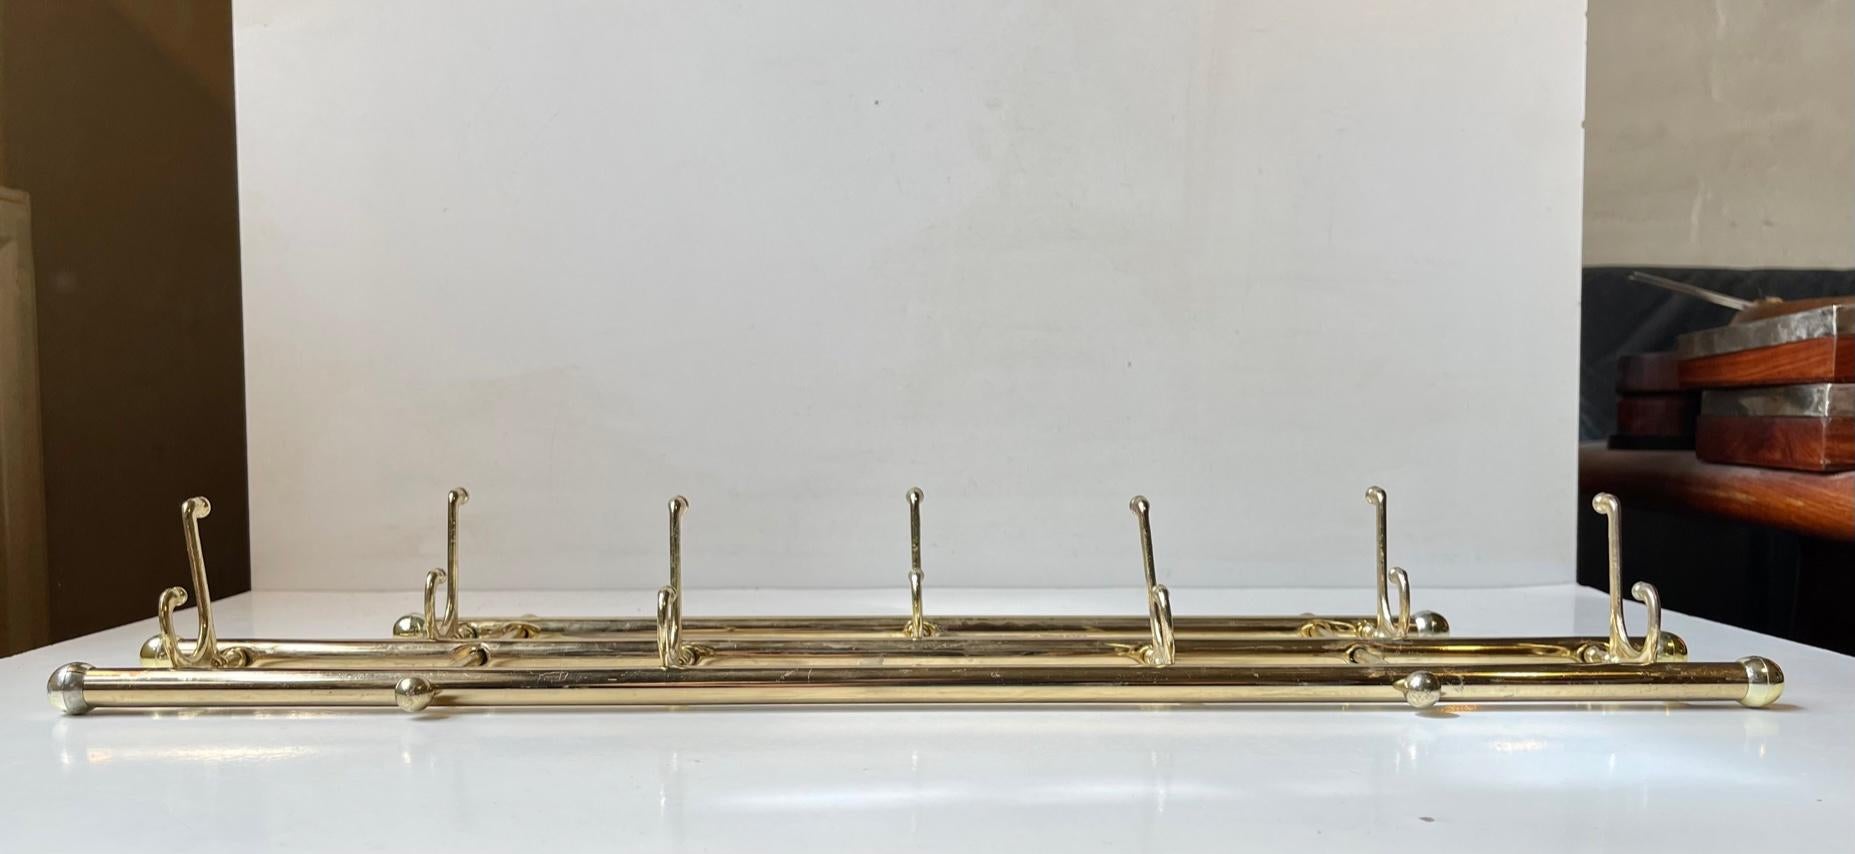 Dekorativer Handtuch-, Küchen- oder Kleingarderobenständer mit 5 gelenkigen/klappbaren Doppelhaken. Er ist aus goldverchromtem Metall, Messing und Kunststoff gefertigt. Unbekannter Hersteller, ca. 1970-80. Maße: B/L: 55 cm, H: 18 cm, T: 2 cm